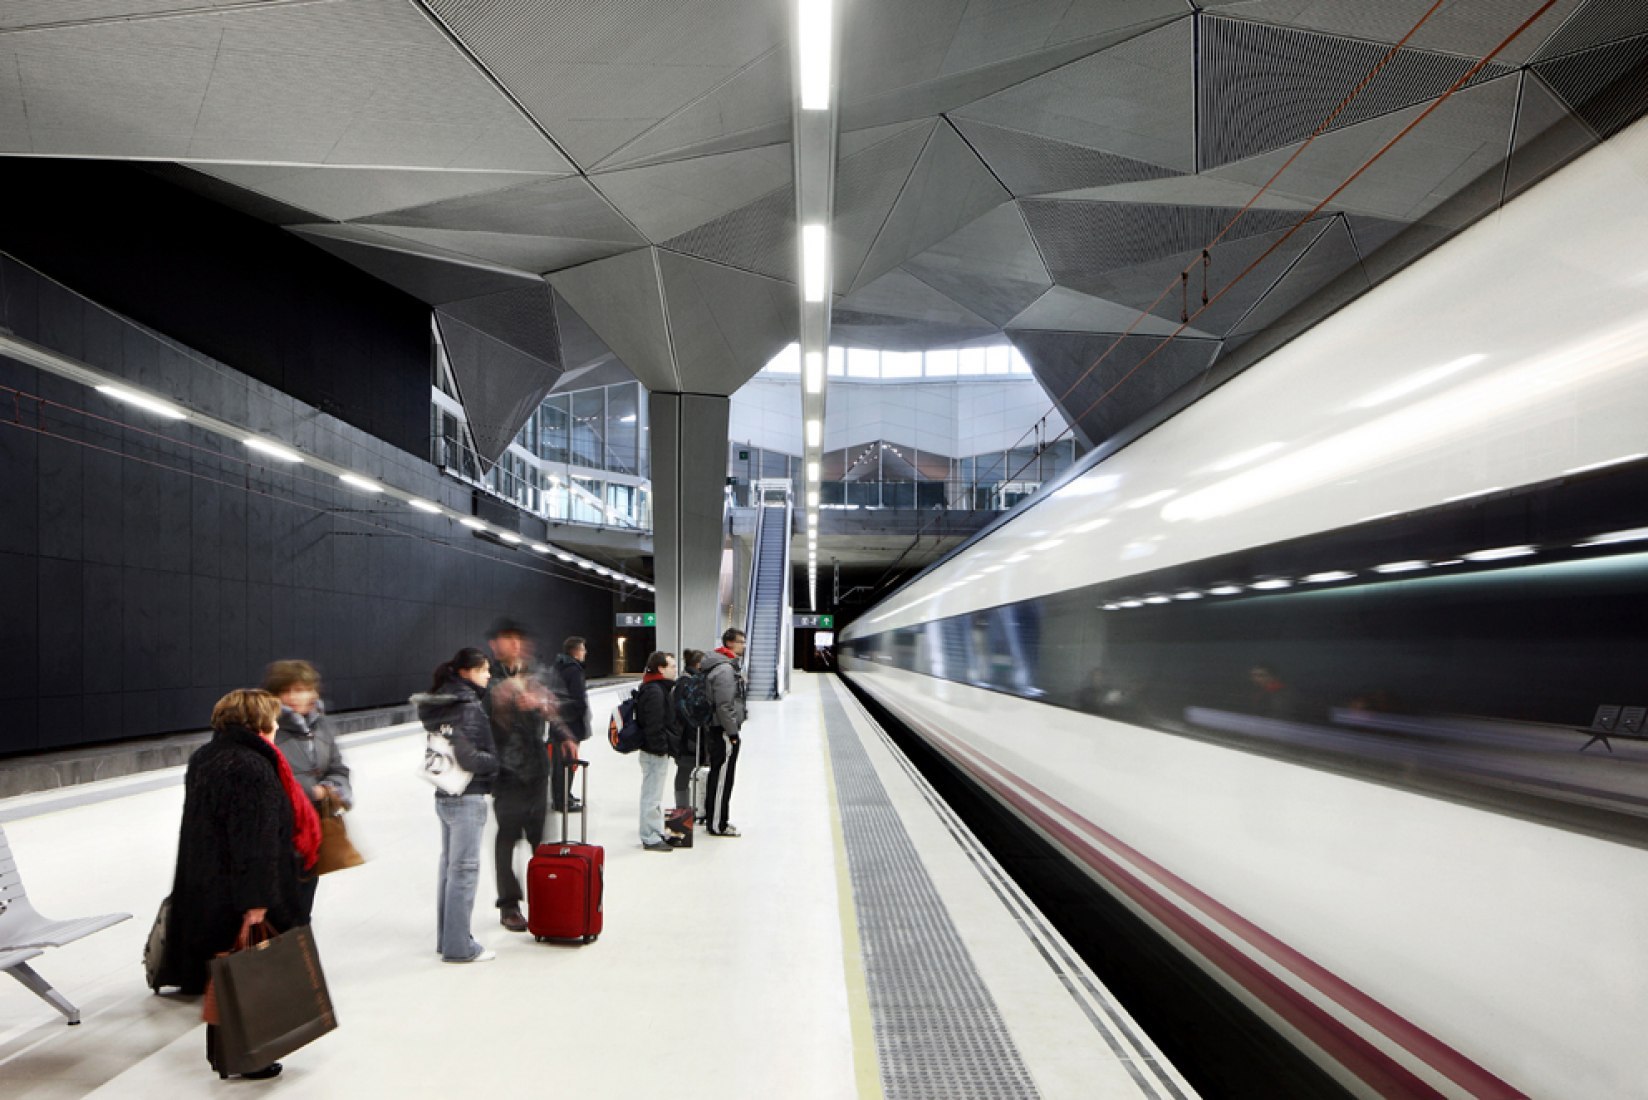 Estación de alta velocidad de Logroño por Ábalos+Sentkiewicz Arquitectos. Fotografía © José Hevia